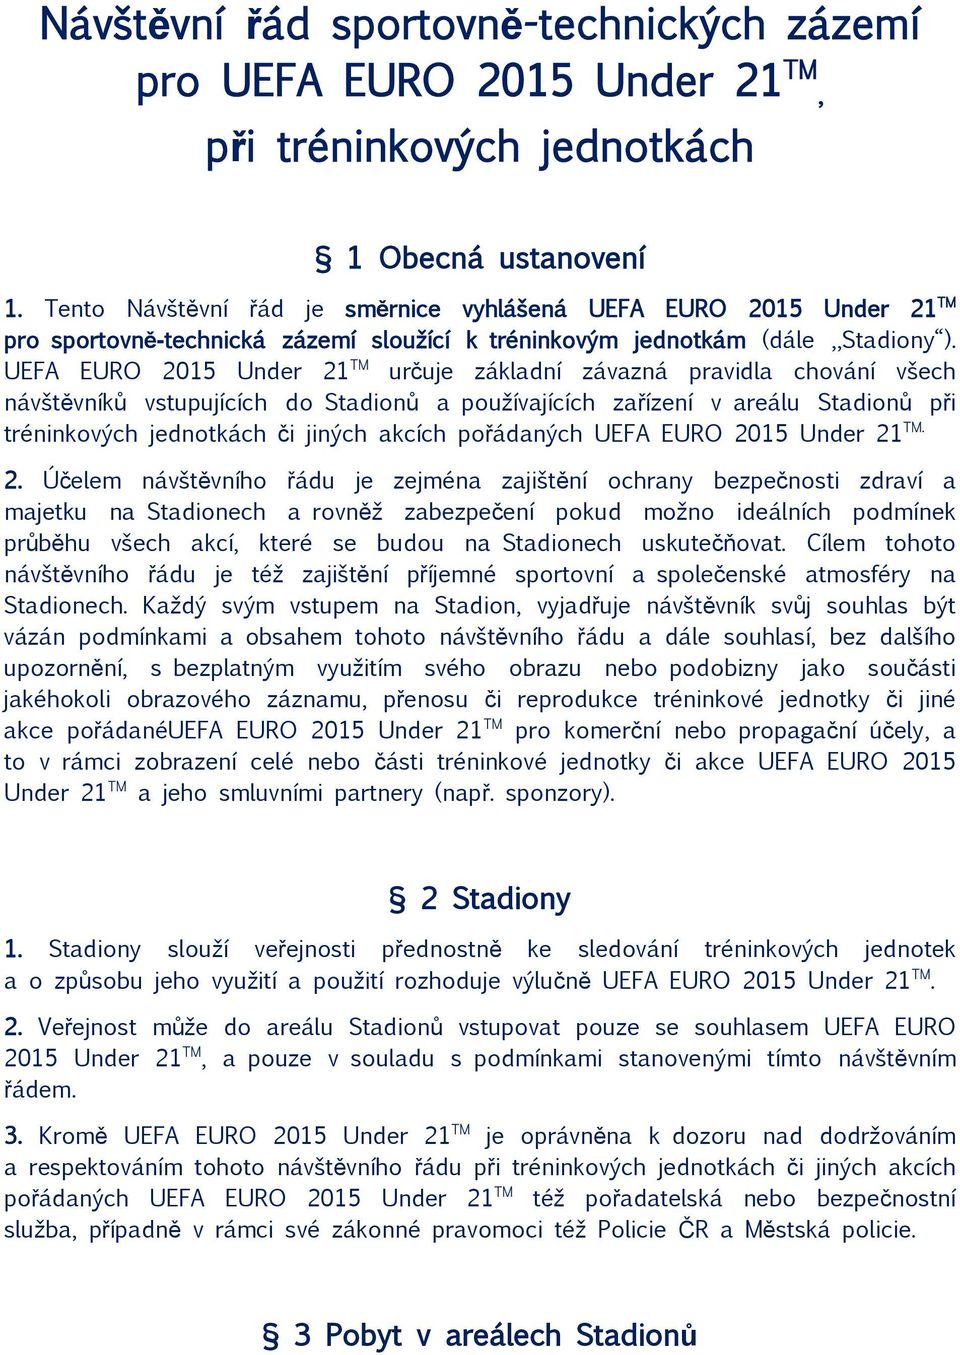 UEFA EURO 2015 Under 21 TM určuje základní závazná pravidla chování všech návštěvníků vstupujících do Stadionů a používajících zařízení v areálu Stadionů při tréninkových jednotkách či jiných akcích